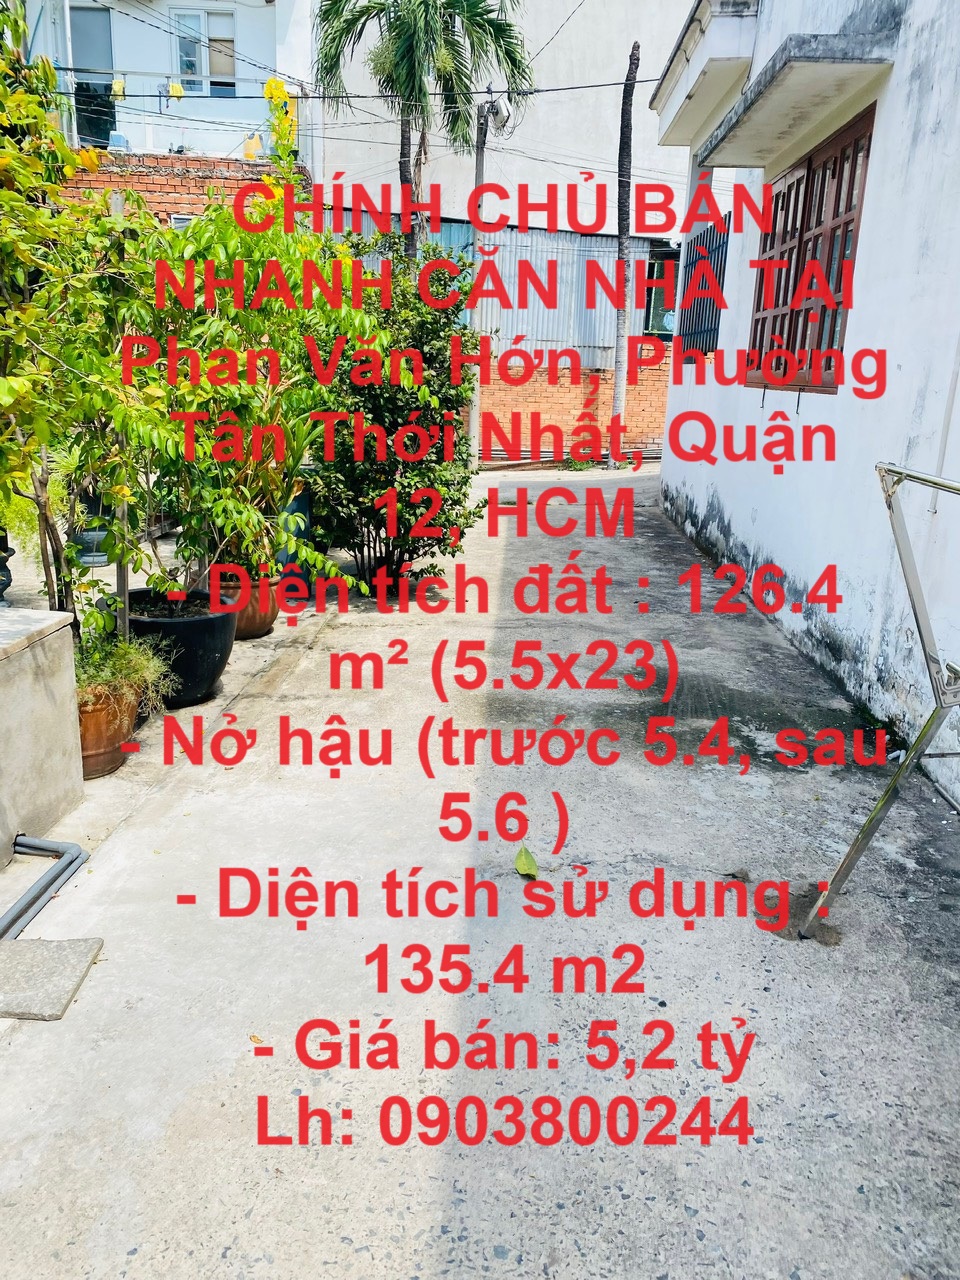 CHÍNH CHỦ BÁN NHANH CĂN NHÀ TẠI Phan Văn Hớn, Phường Tân Thới Nhất, Quận 12, HCM - Ảnh chính